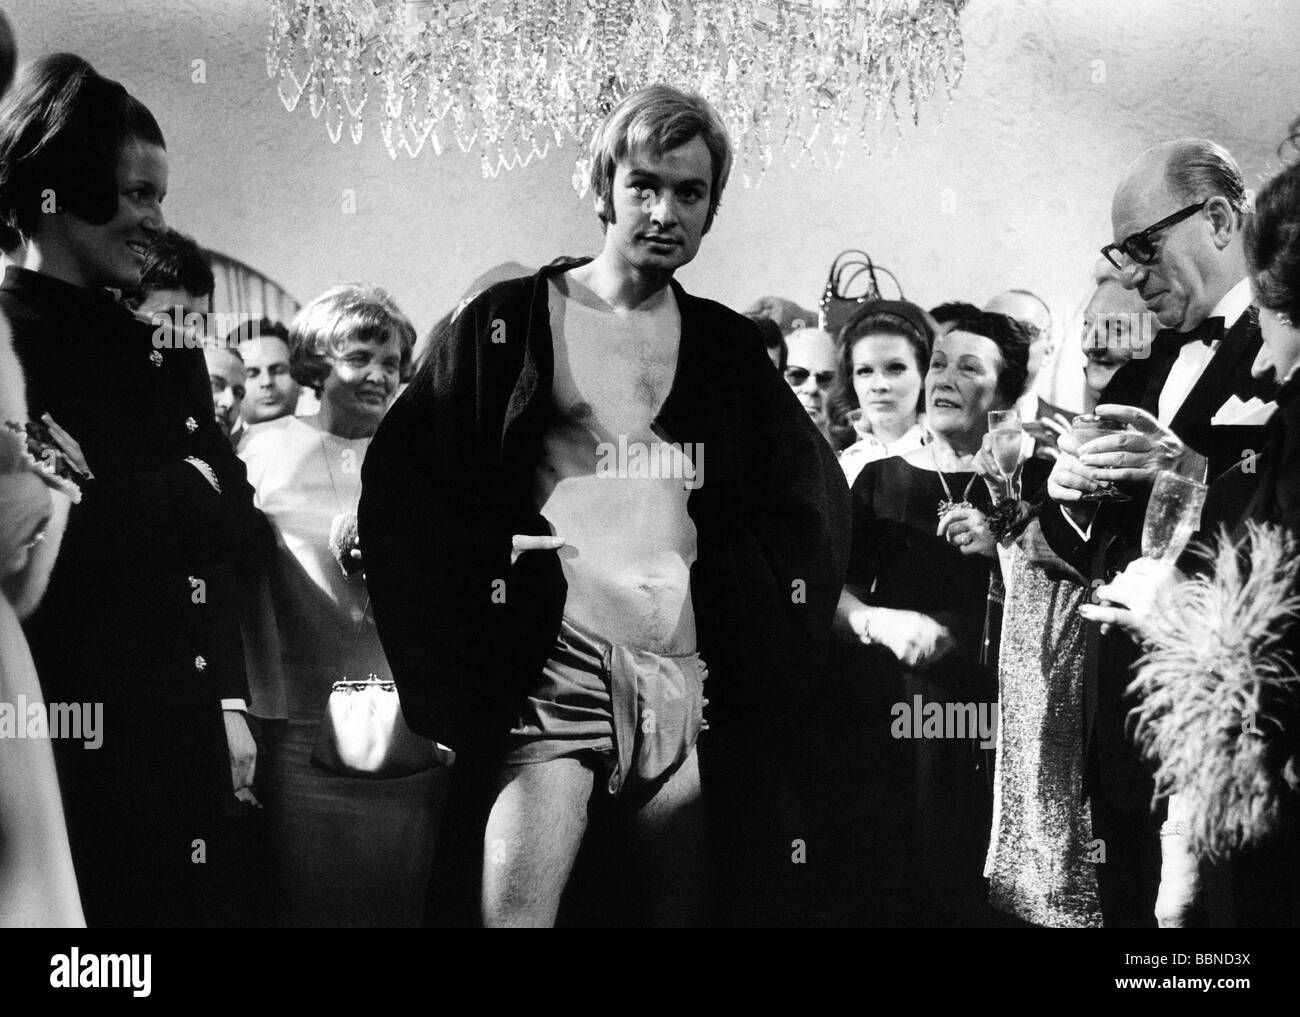 Moshammer, Rudolph, 27.9.1940 - 14.01.2005, stilista tedesco, presentazione della sua nuova collezione, Monaco, gennaio 1968, modello maschile con bauli da bagno e accappatoio corto, Foto Stock